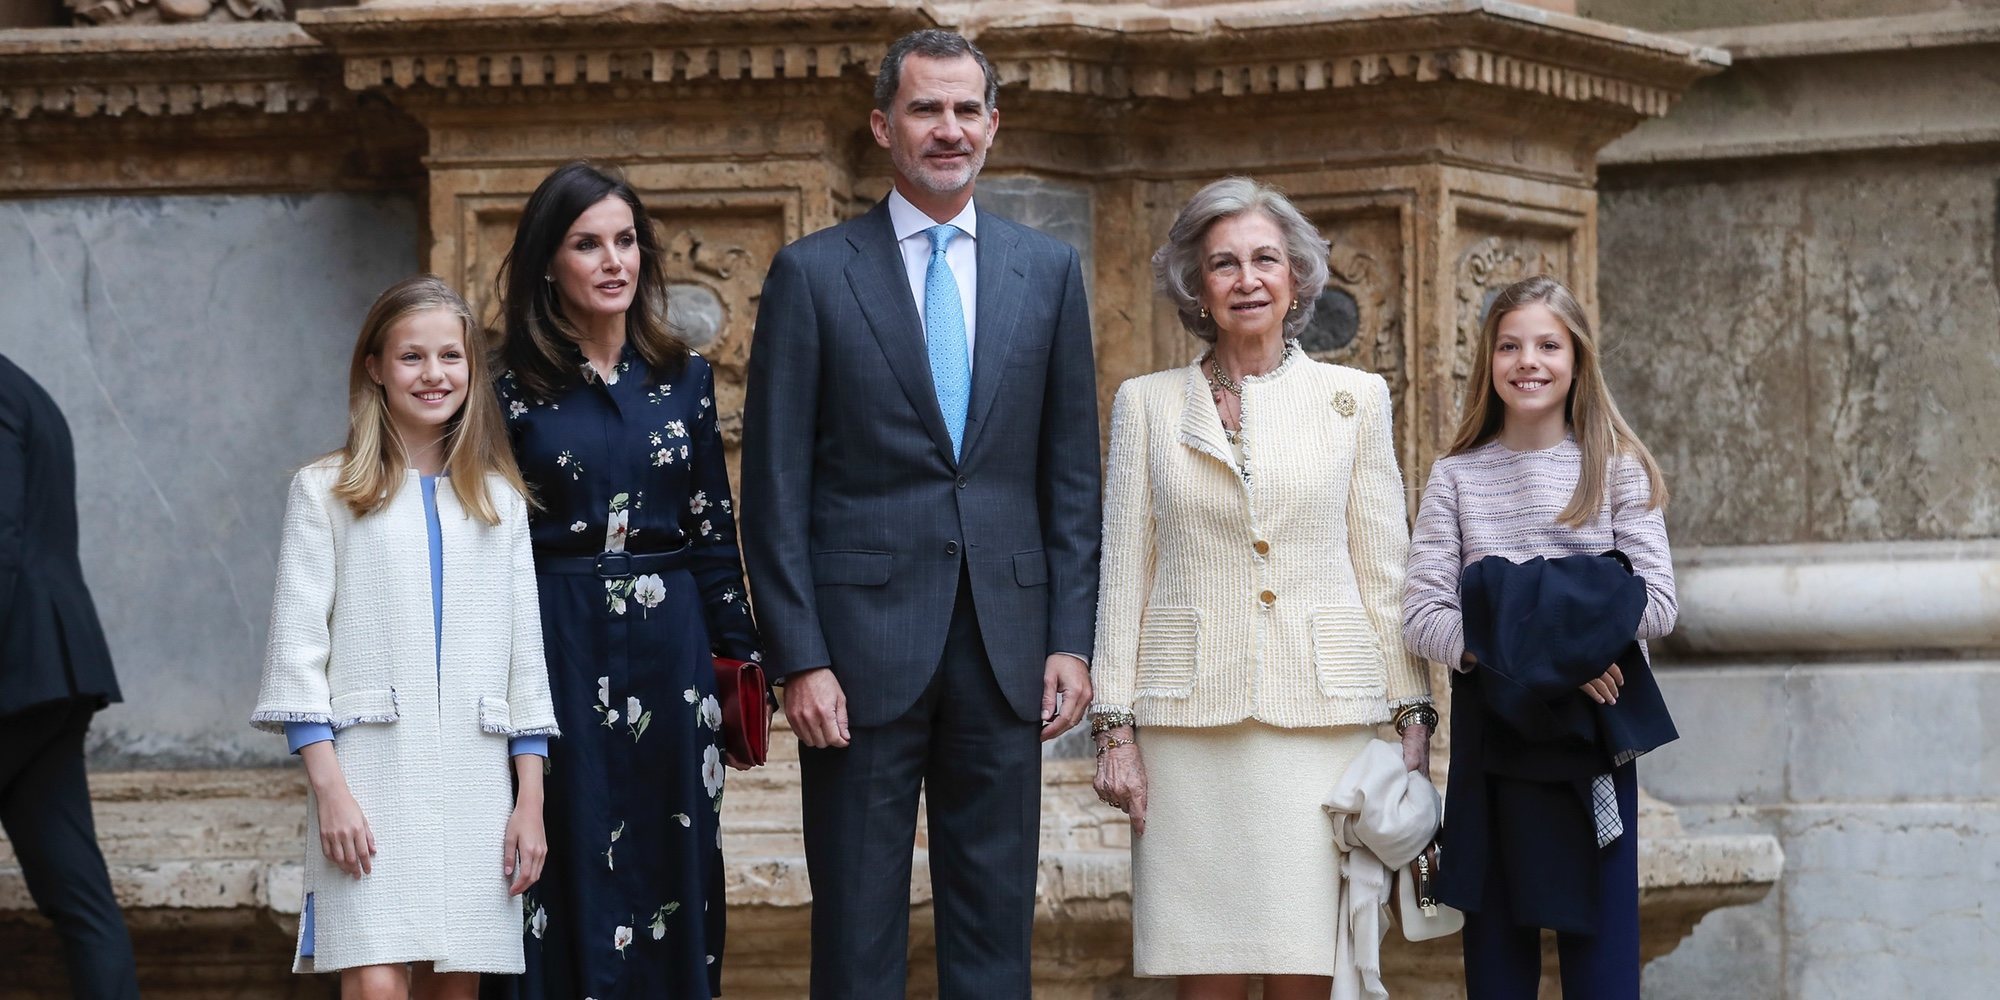 Los Reyes Felipe y Letizia y sus hijas Leonor y Sofía acuden a la Misa de Pascua 2019 con la Reina Sofía